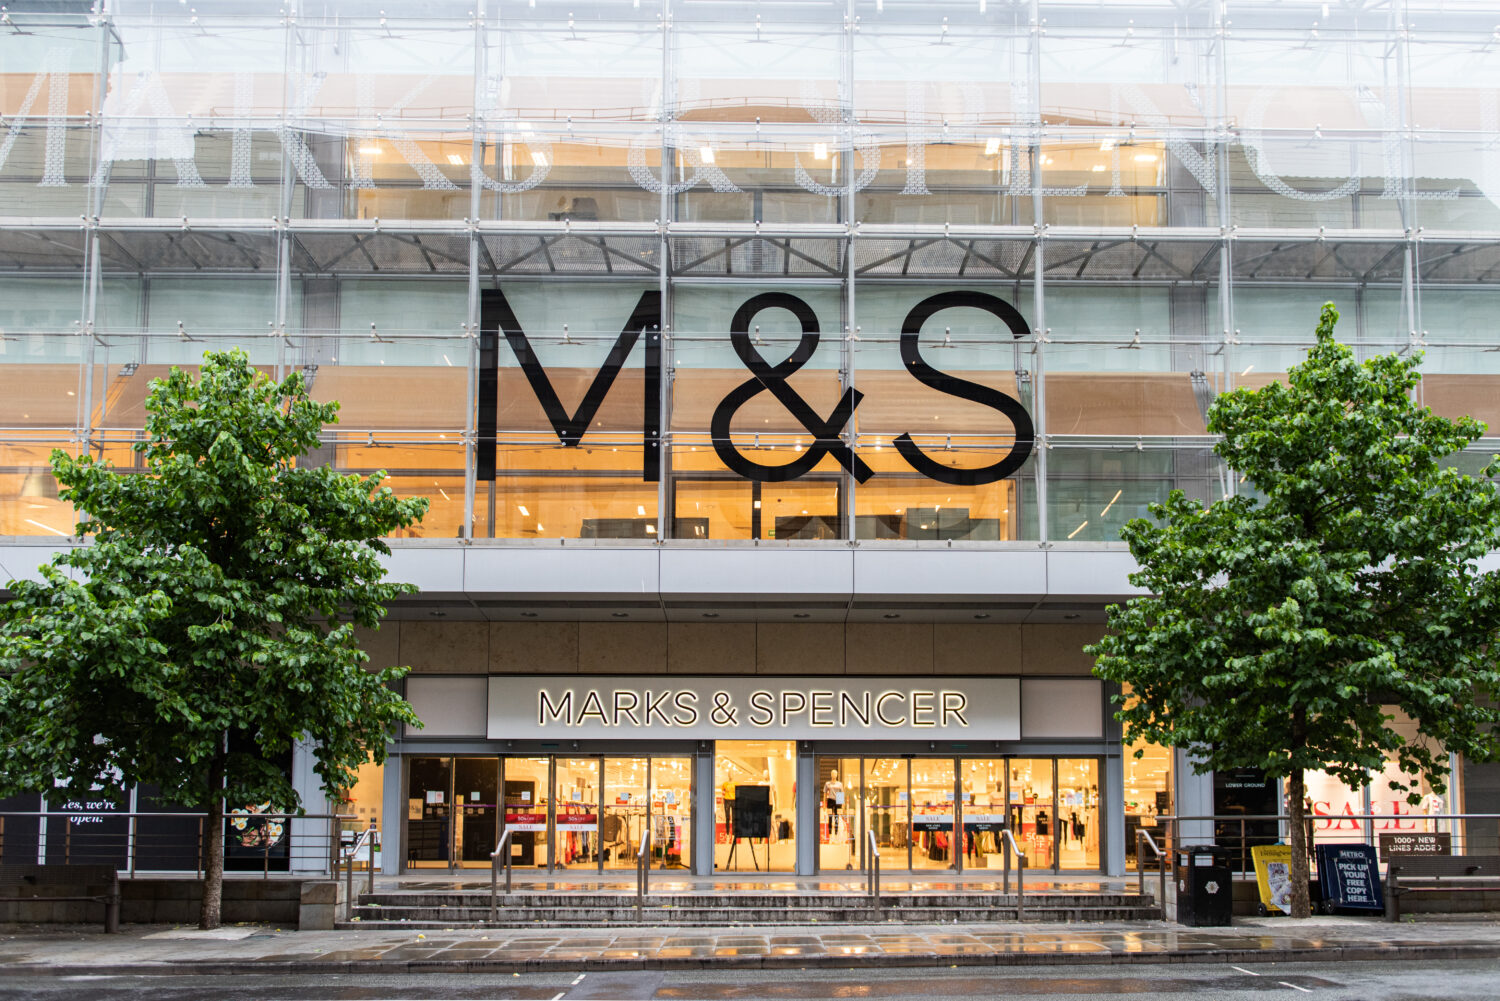 The revitalisation of Marks & Spencer